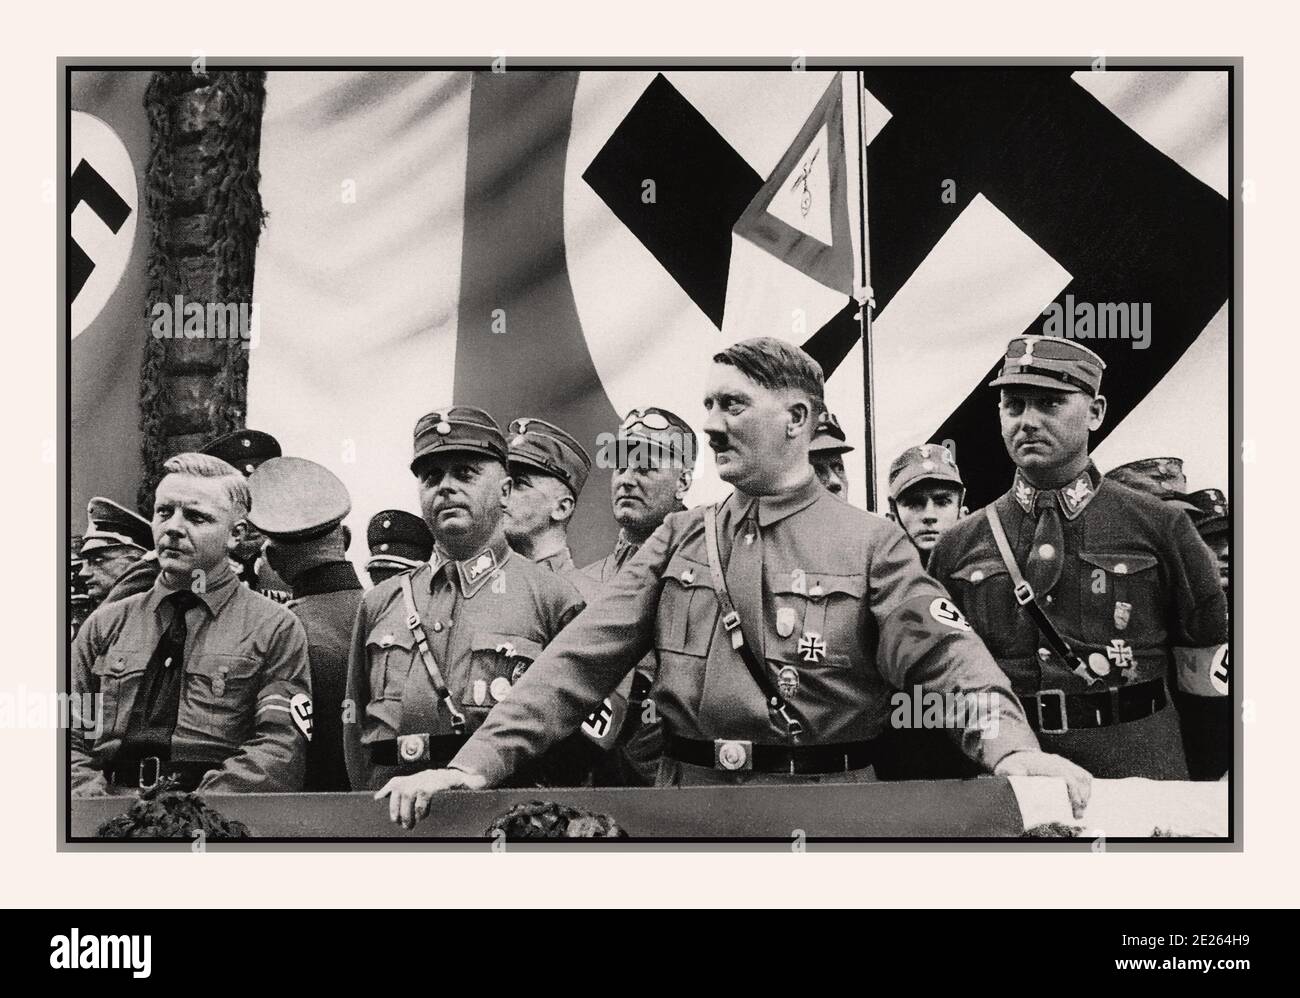 Archive 1930 Adolf Hitler in uniforme con fascia da braccio swastika in un raduno politico. Con i membri NSDAP 1930, Dortmund, Germania con la grande bandiera Swastika come sfondo Foto Stock